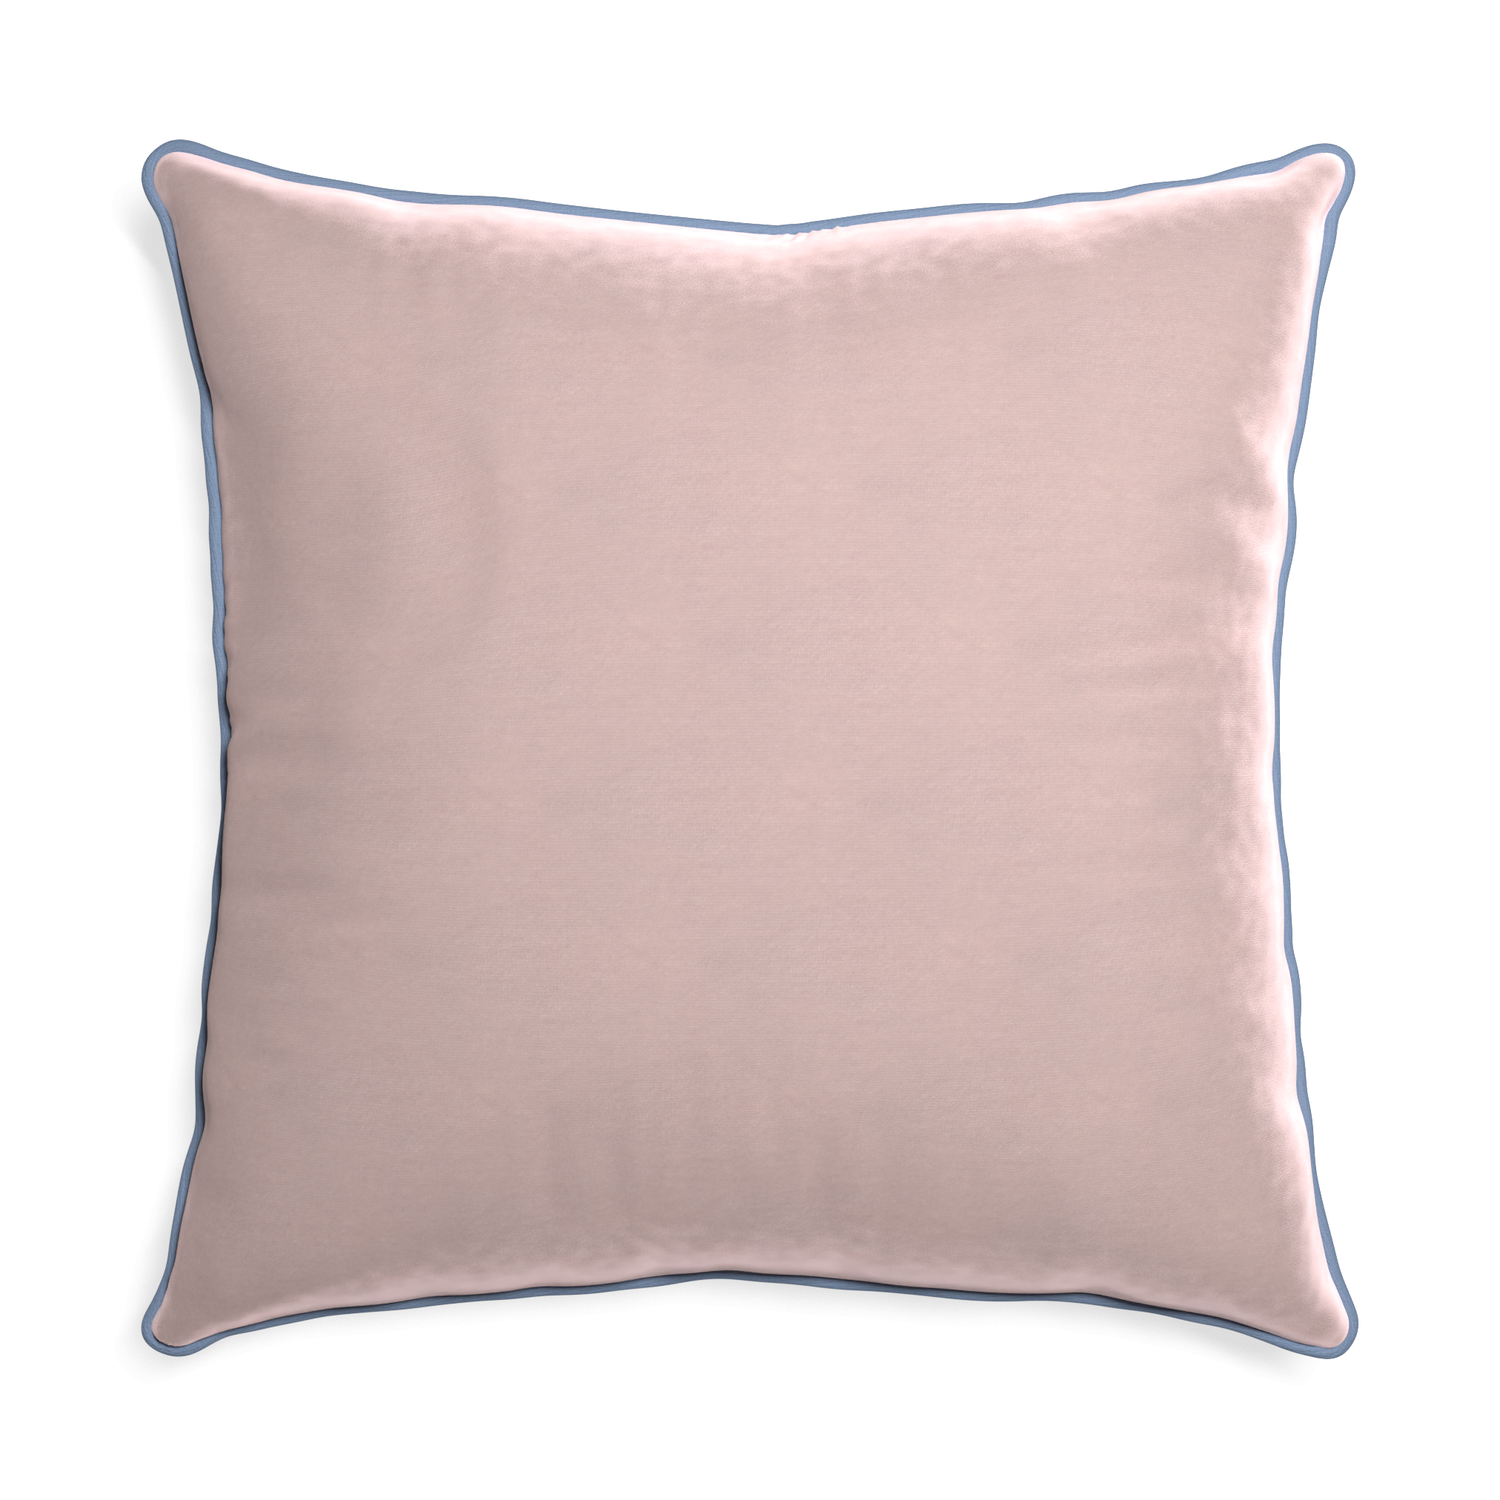 Euro-sham rose velvet custom pillow with sky piping on white background